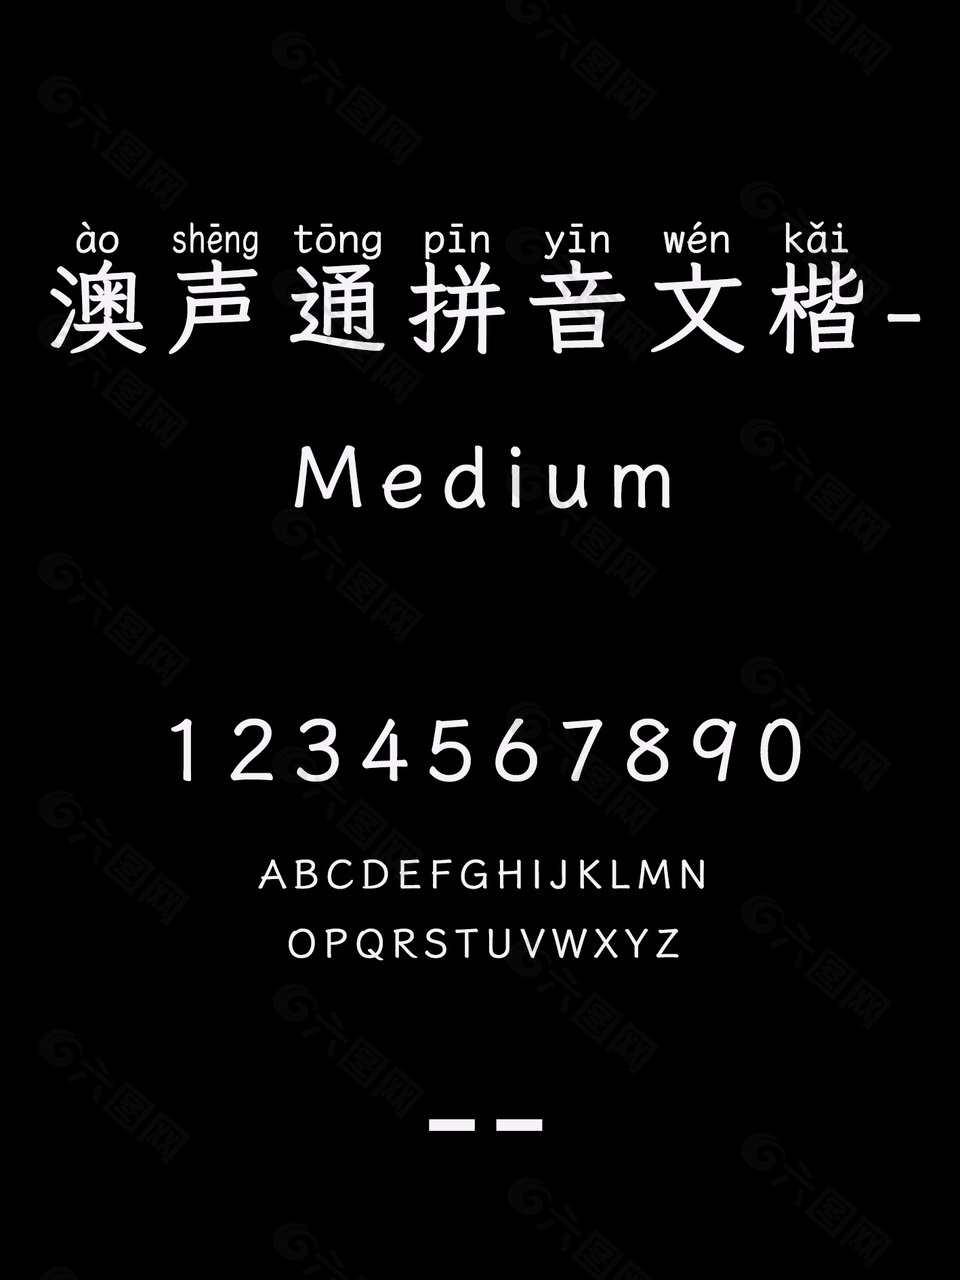 澳声通拼音文楷-Medium艺术字体包